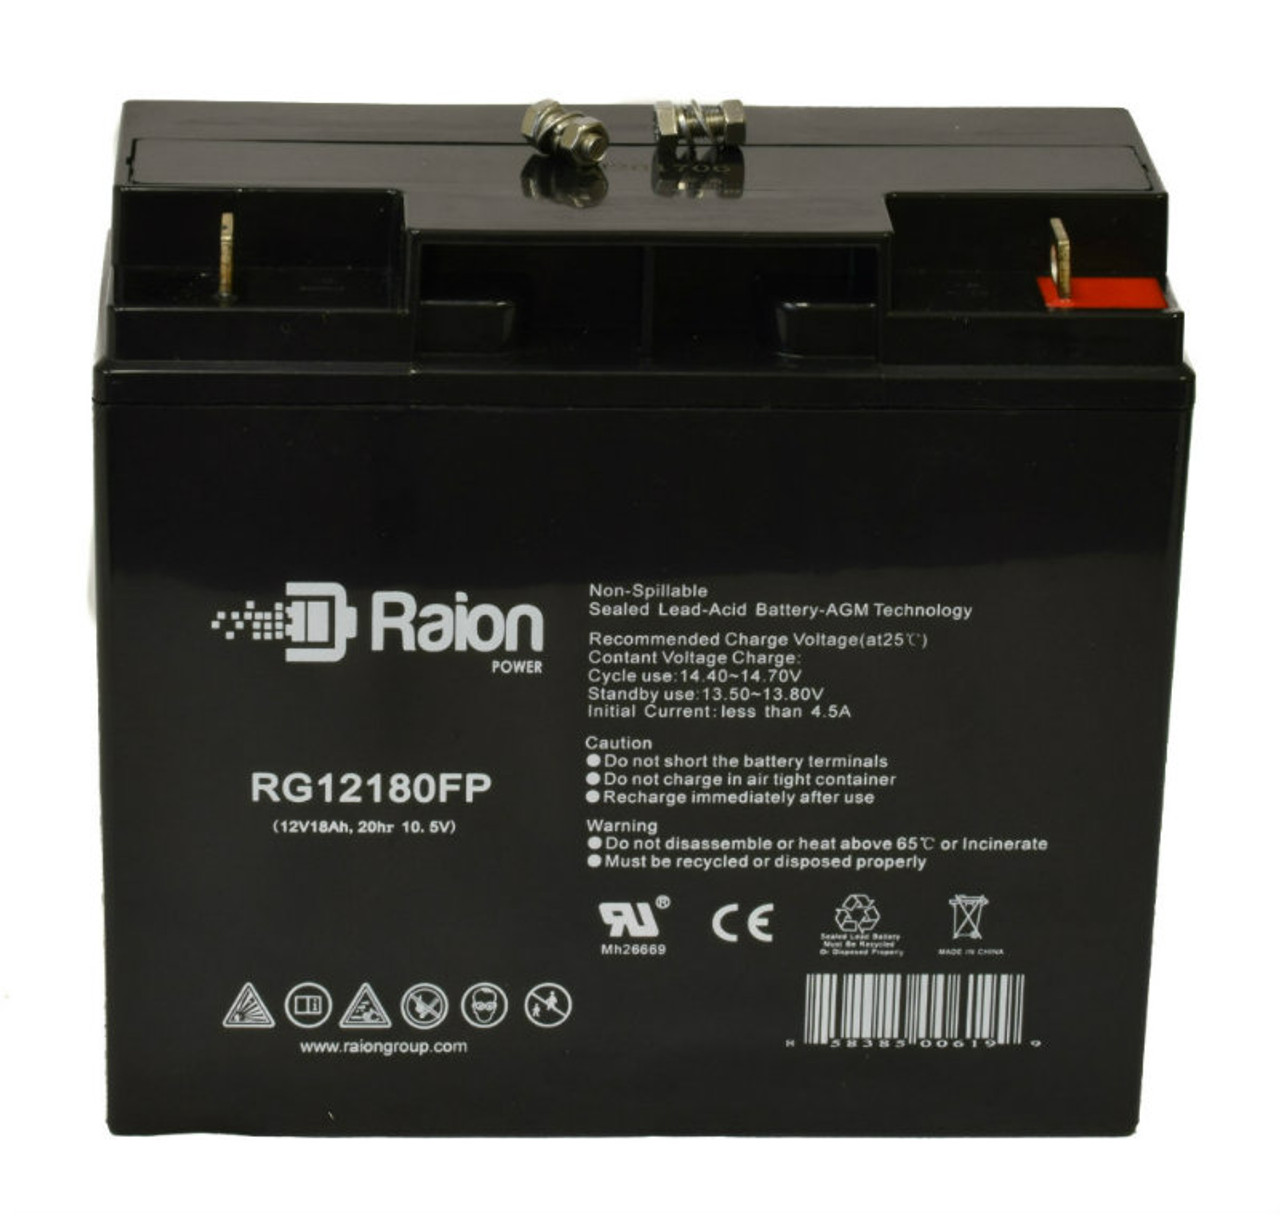 Raion Power RG12180FP 12V 18Ah Lead Acid Battery for FirstPower FP12180HR